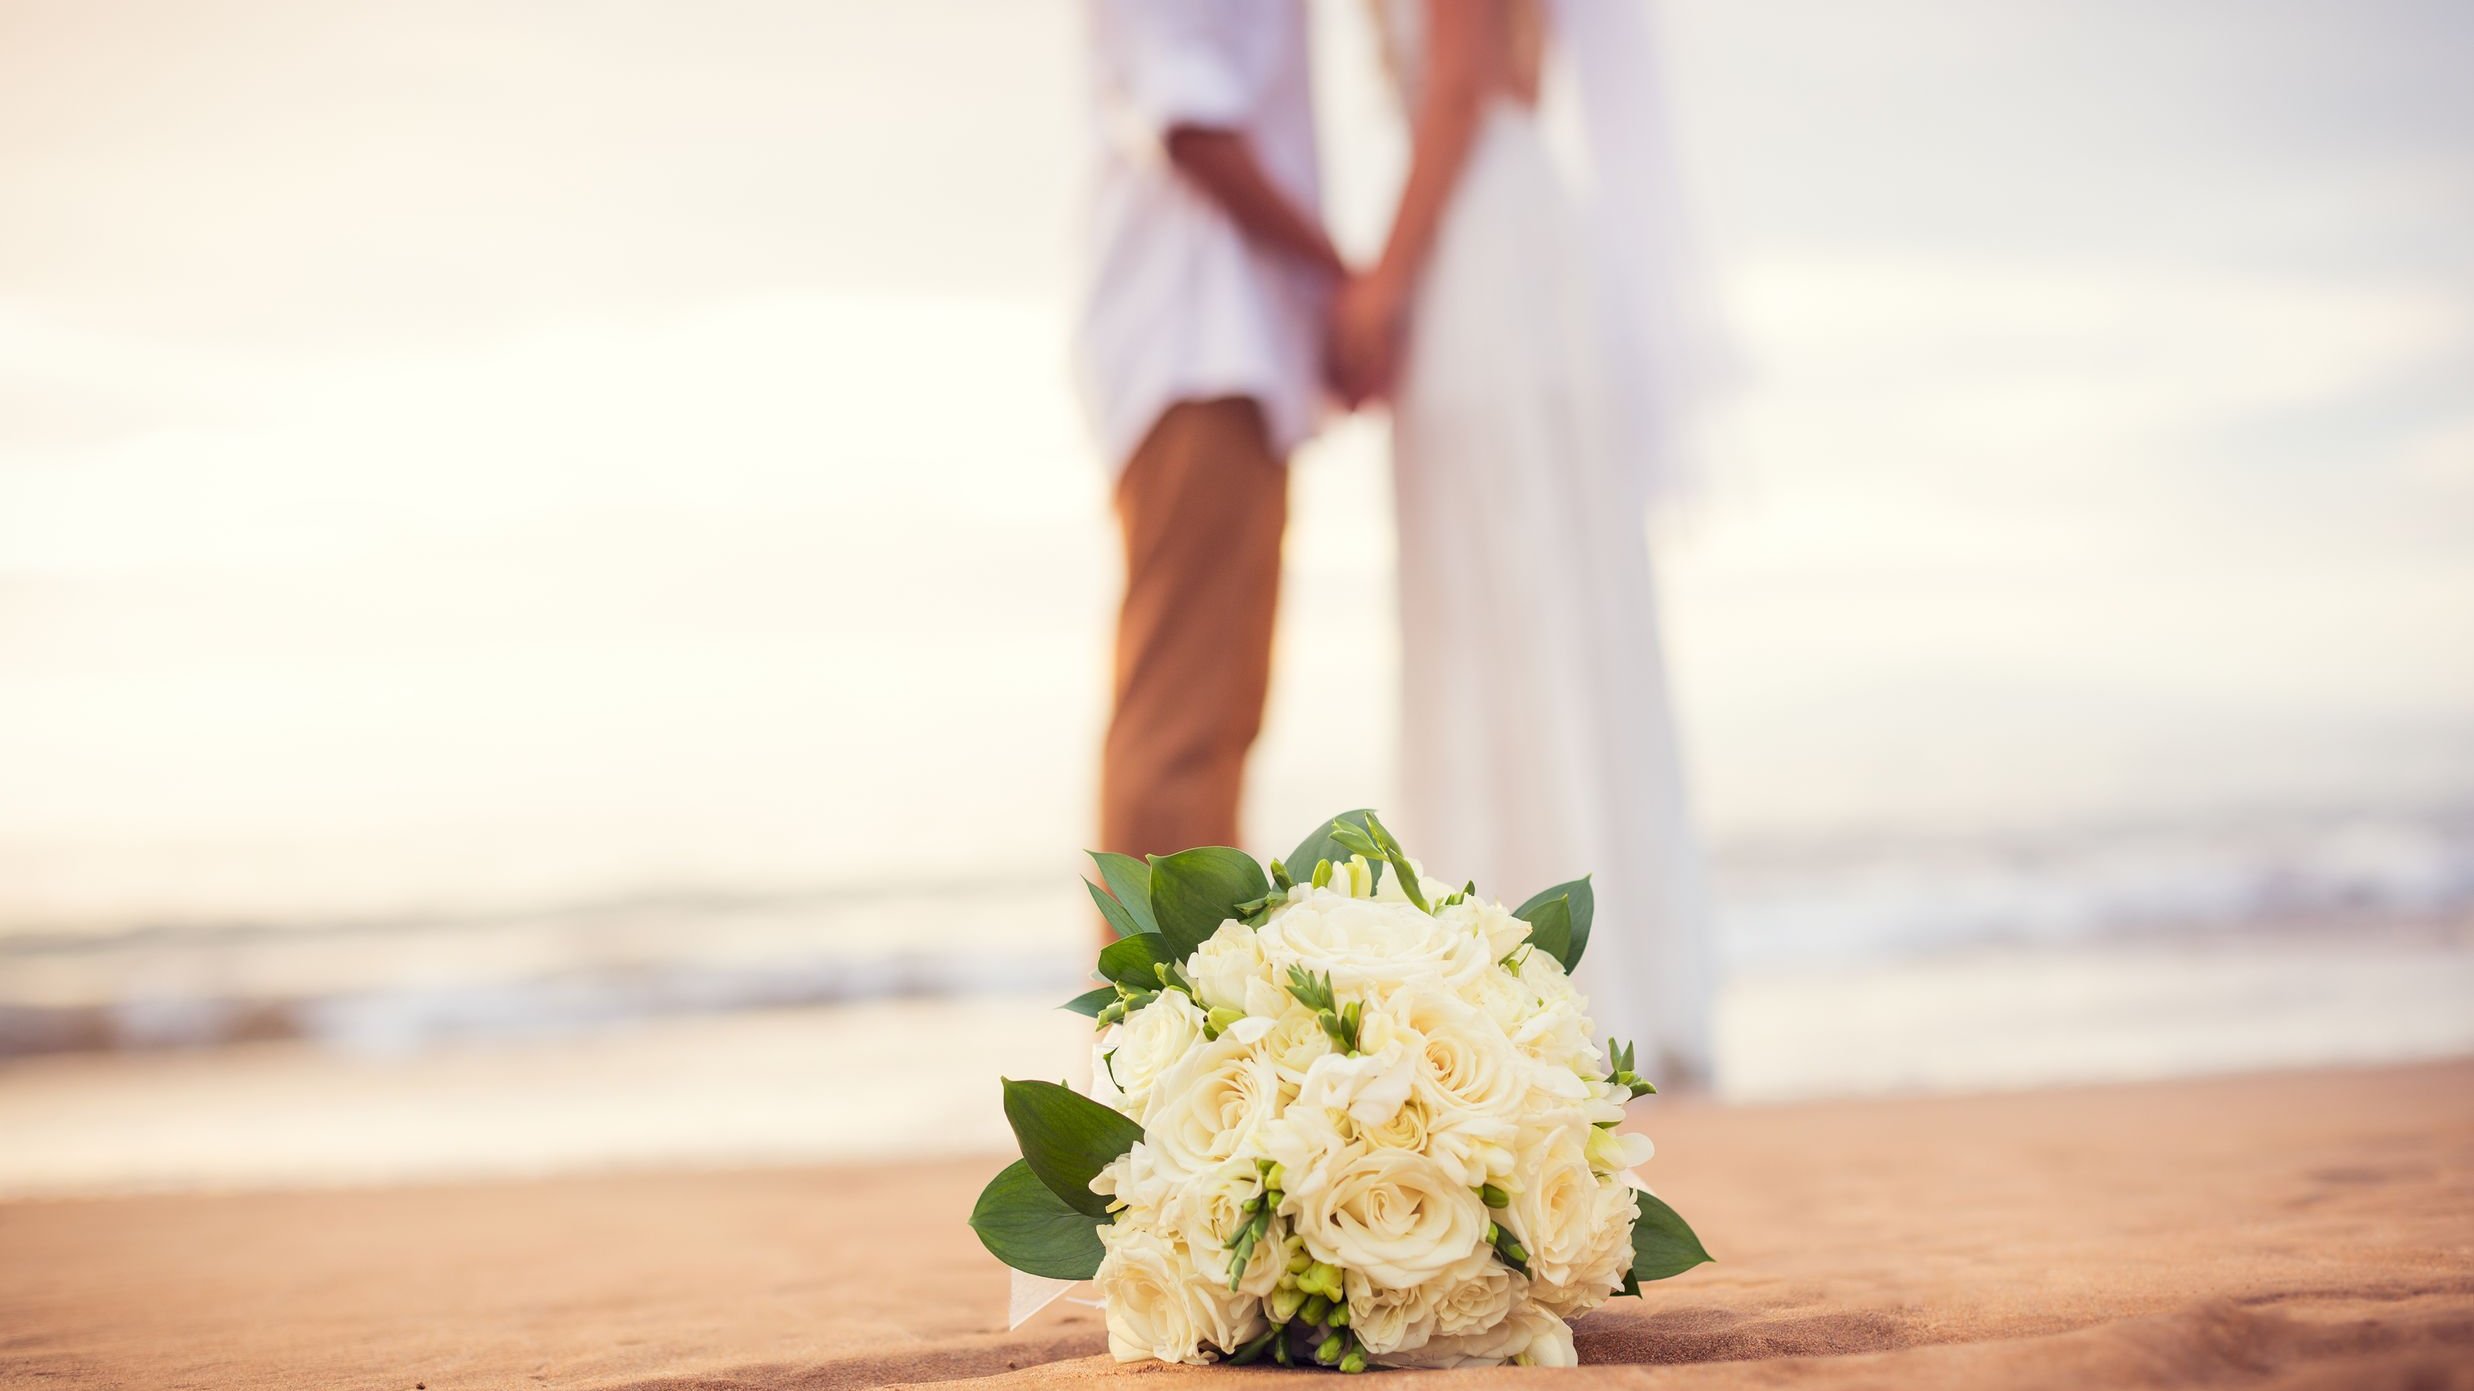 Buquê de flores no chão da praia, ao fundo, desfocado, há um casal de noivos vestidos de branco